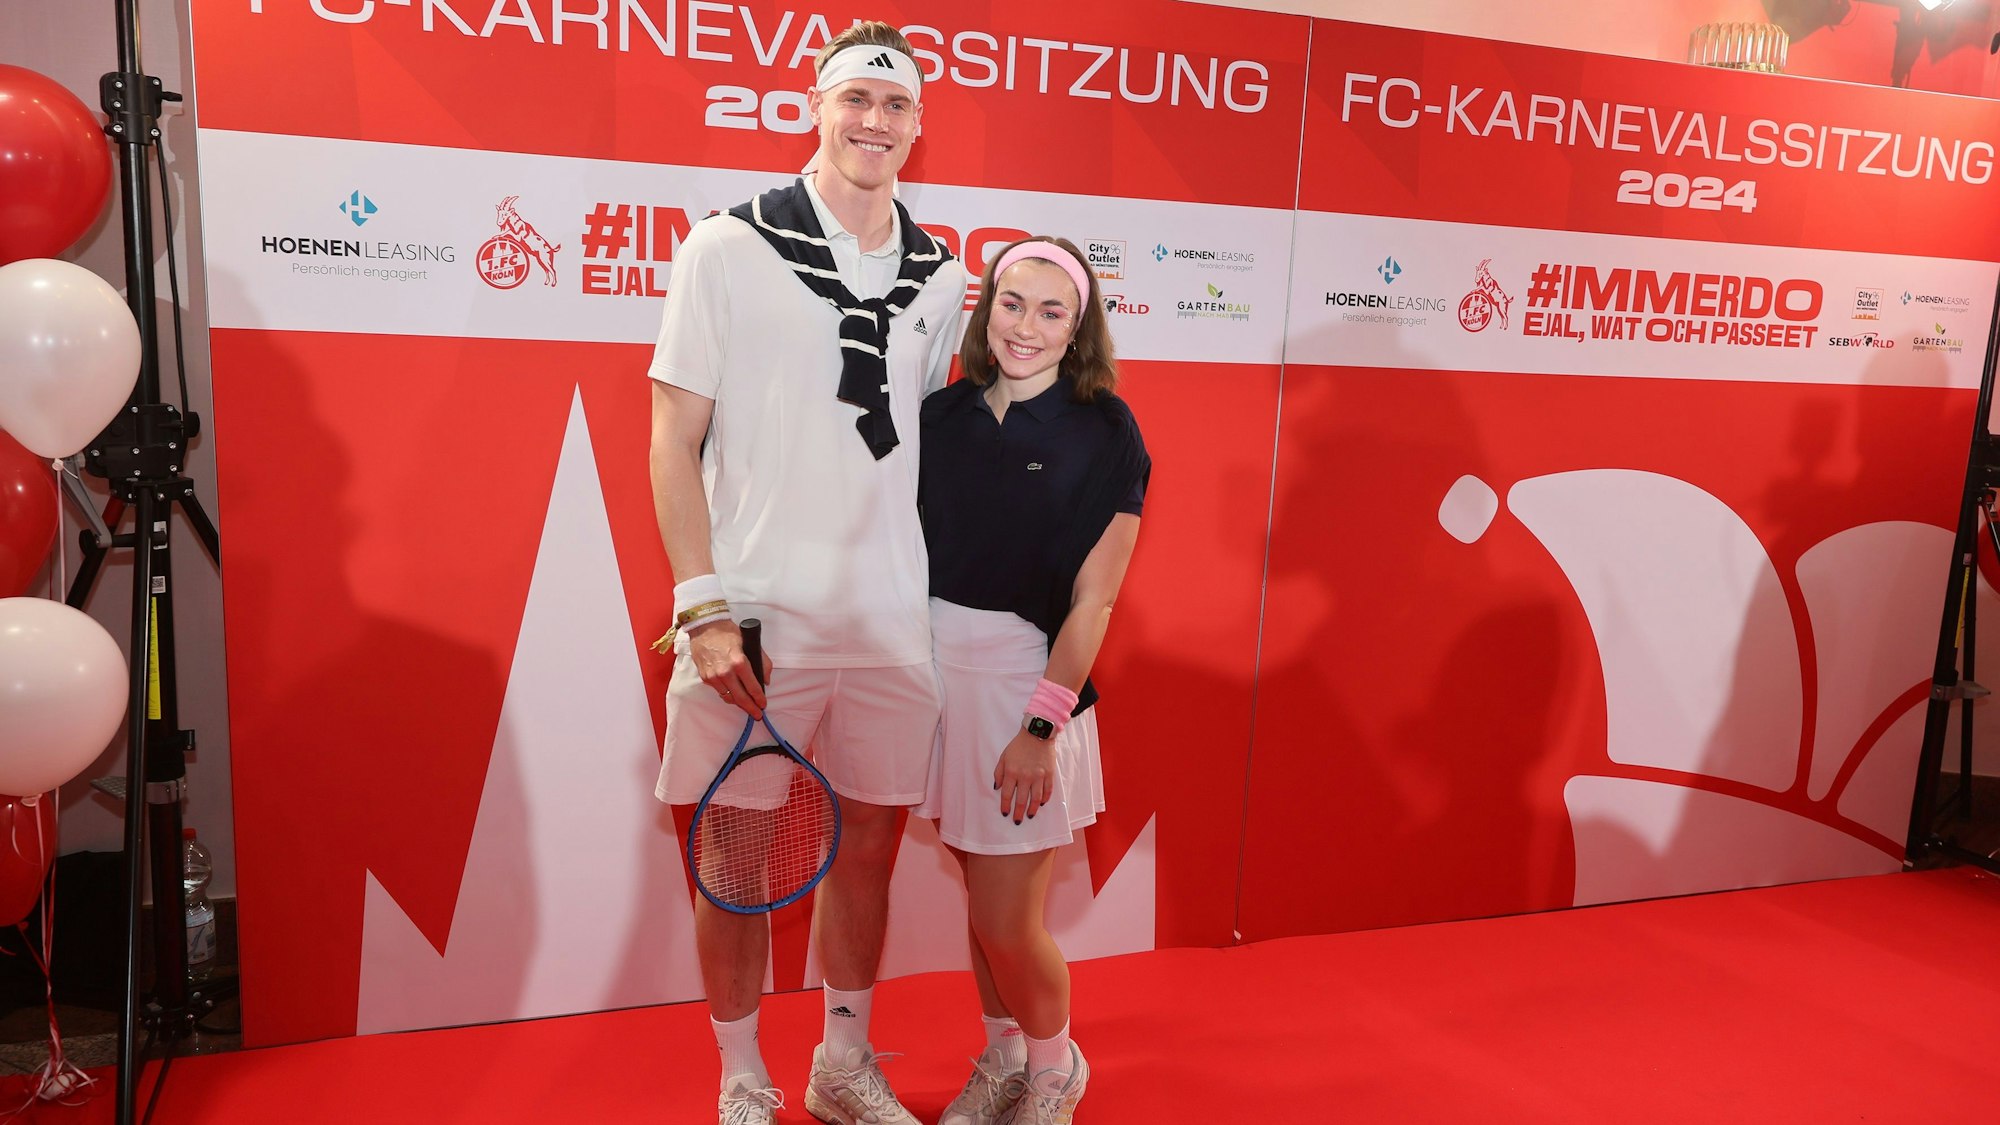 Steffen Tigges mit Frau Sara geben sich im Tennis-Outfit.



